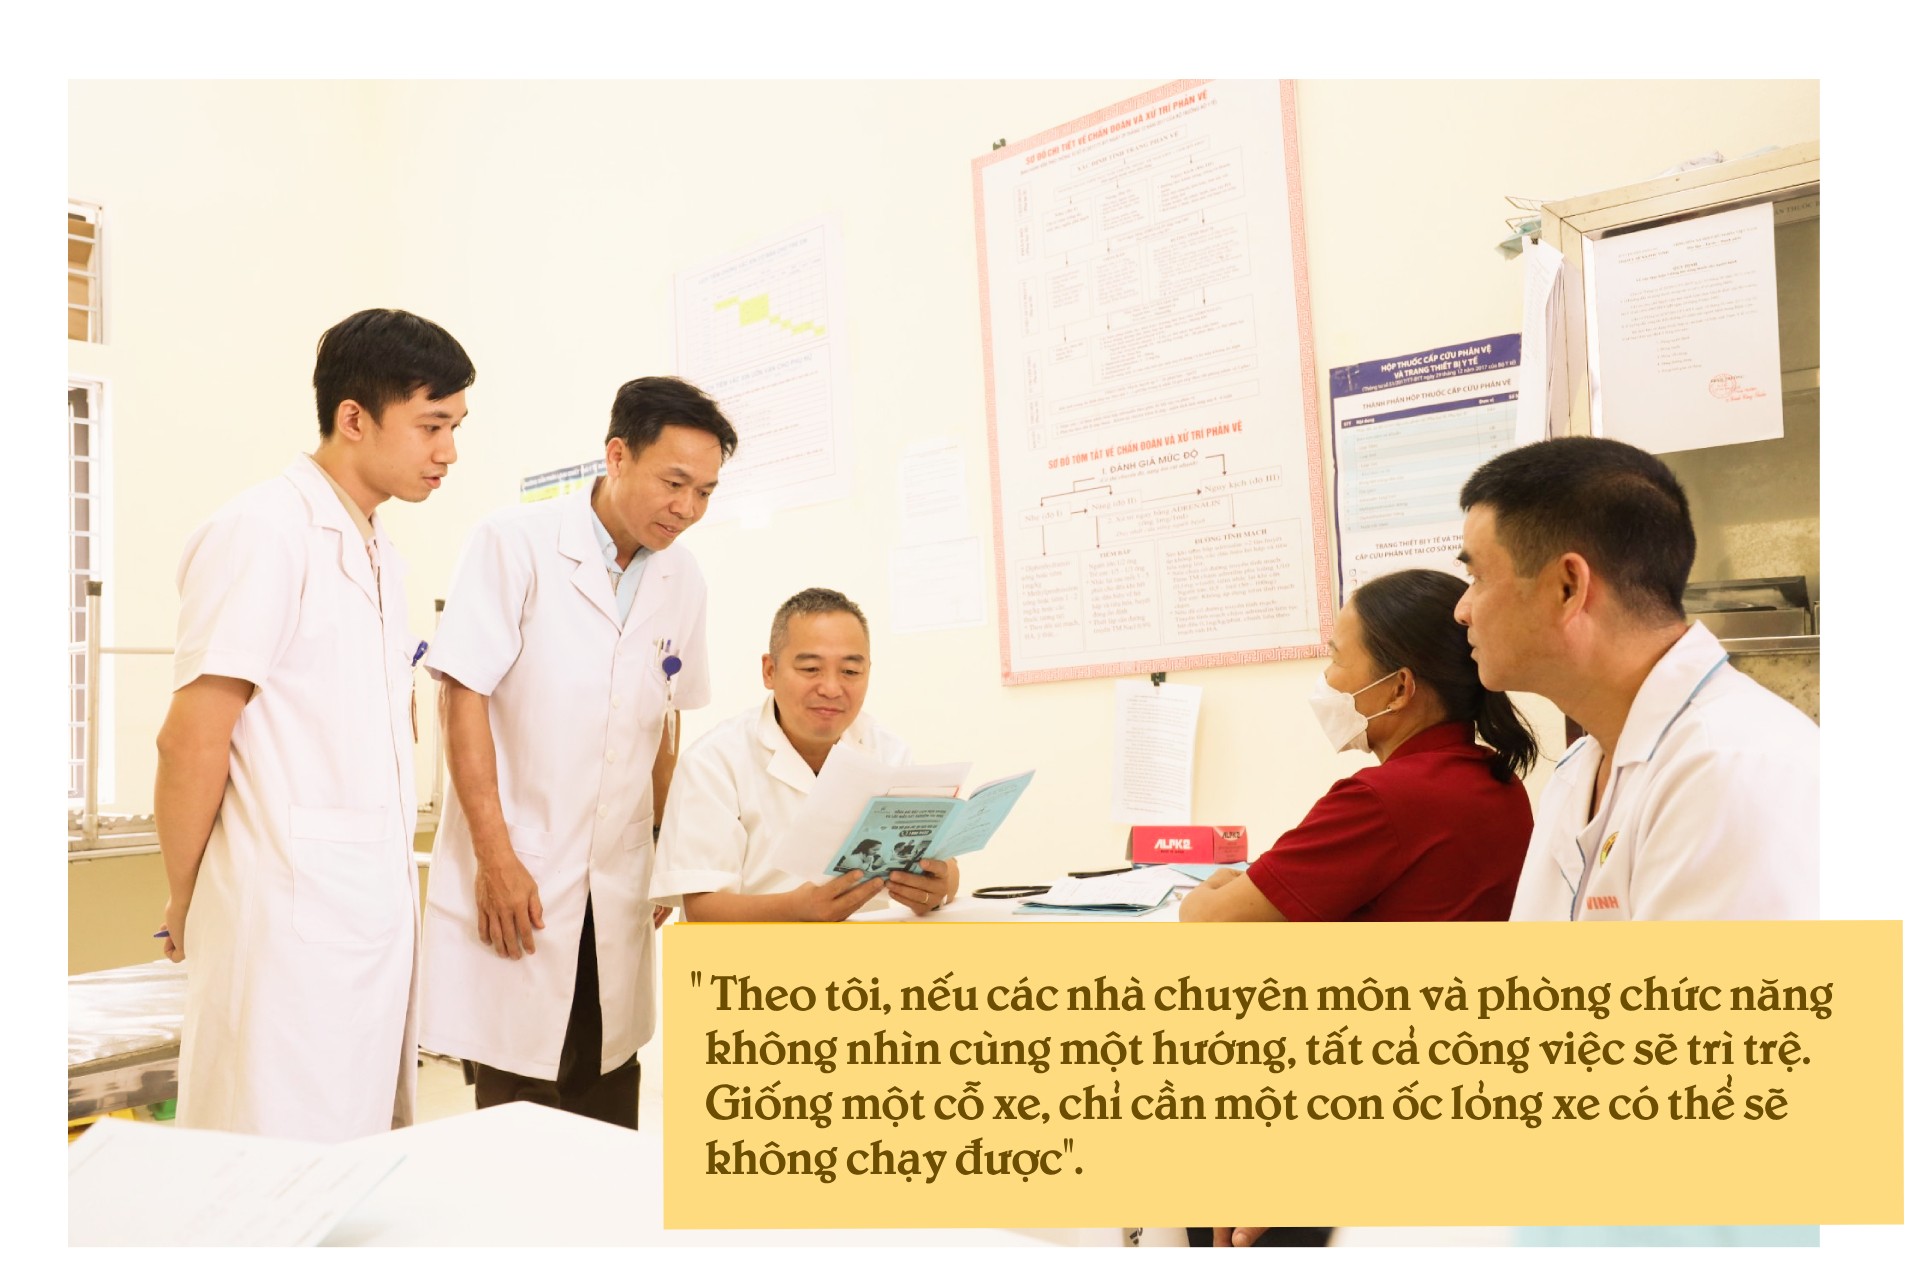 PGS.TS Nguyễn Lân Hiếu: “Chuyên nghiệp” là điều chúng tôi hướng tới, làm sao để bệnh nhân hài lòng khi ra về - 3